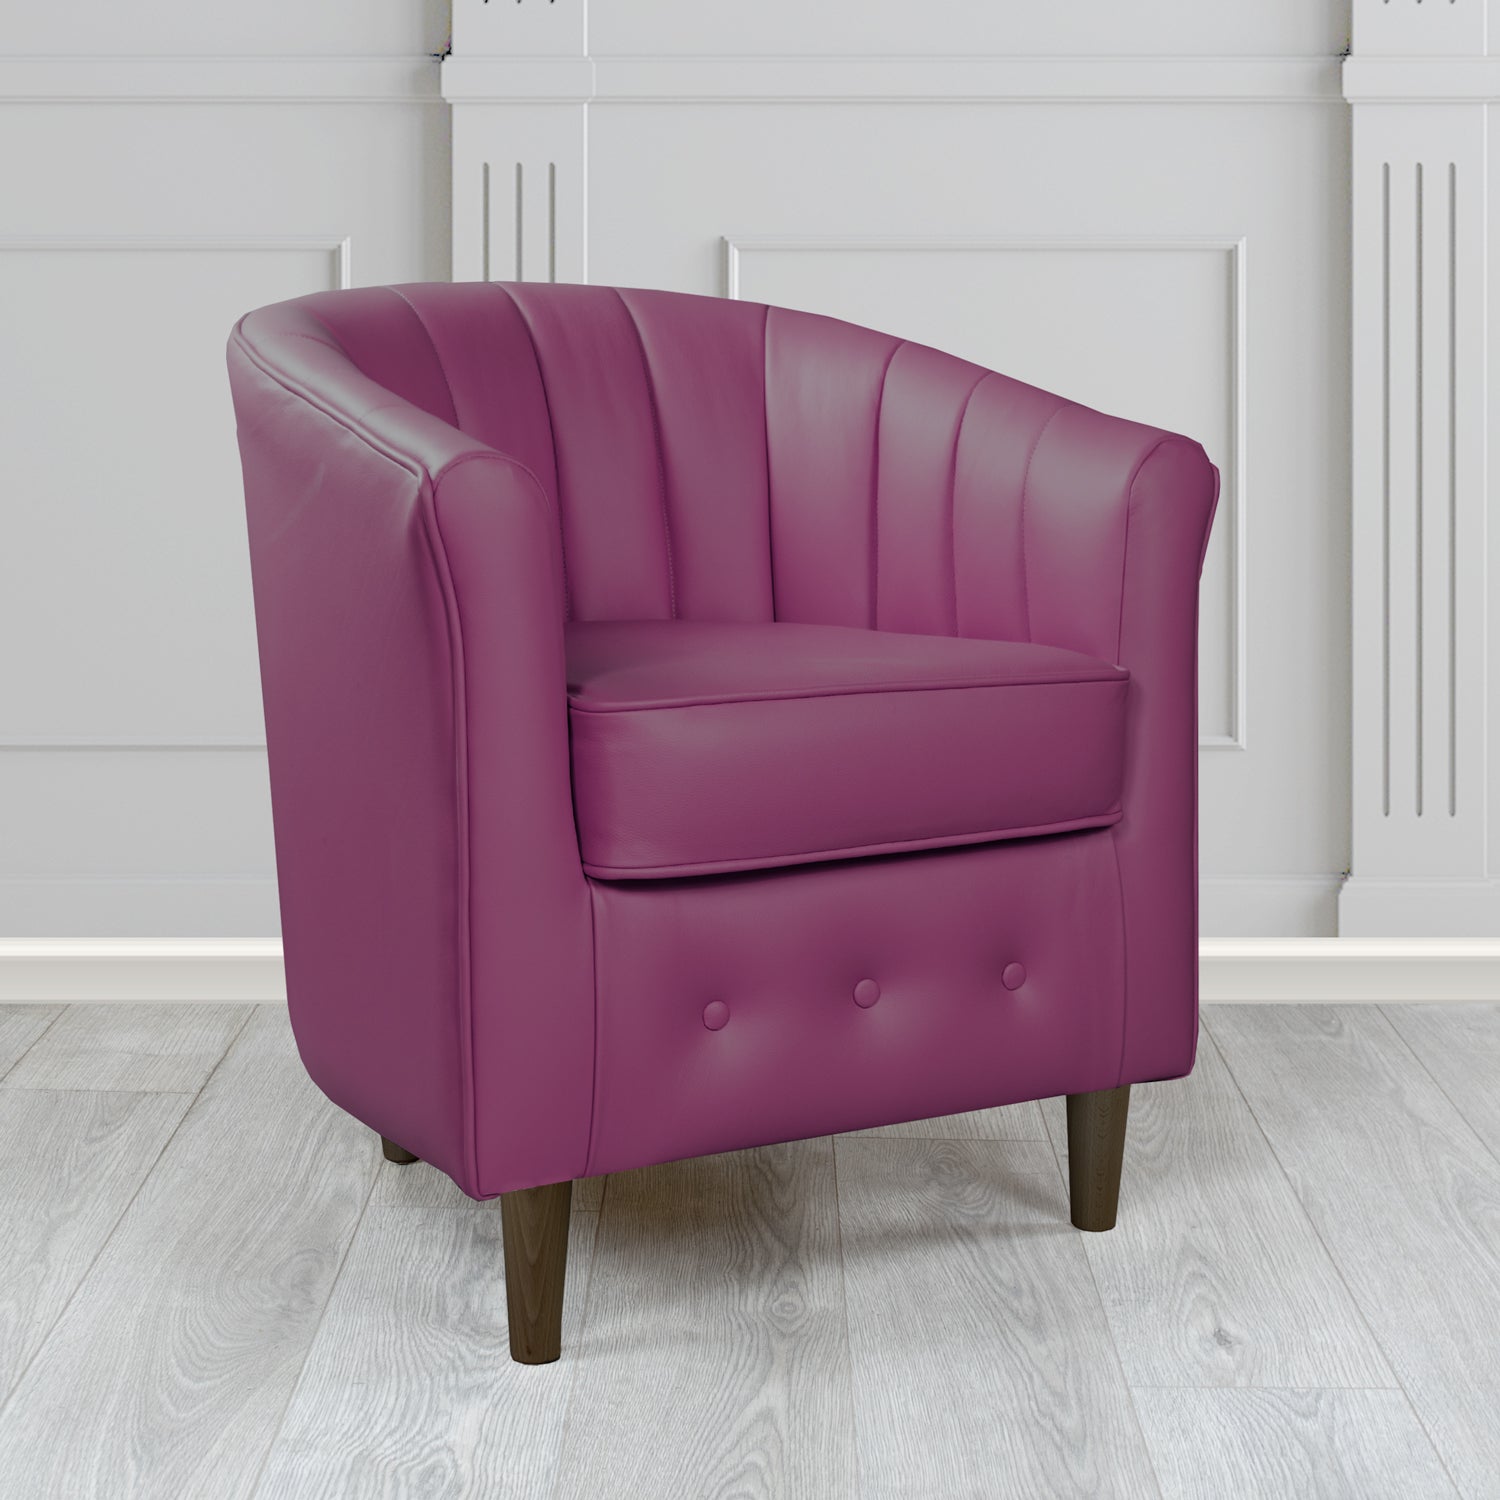 Doha Tub Chair in Vele Aubergine Crib 5 Genuine Leather